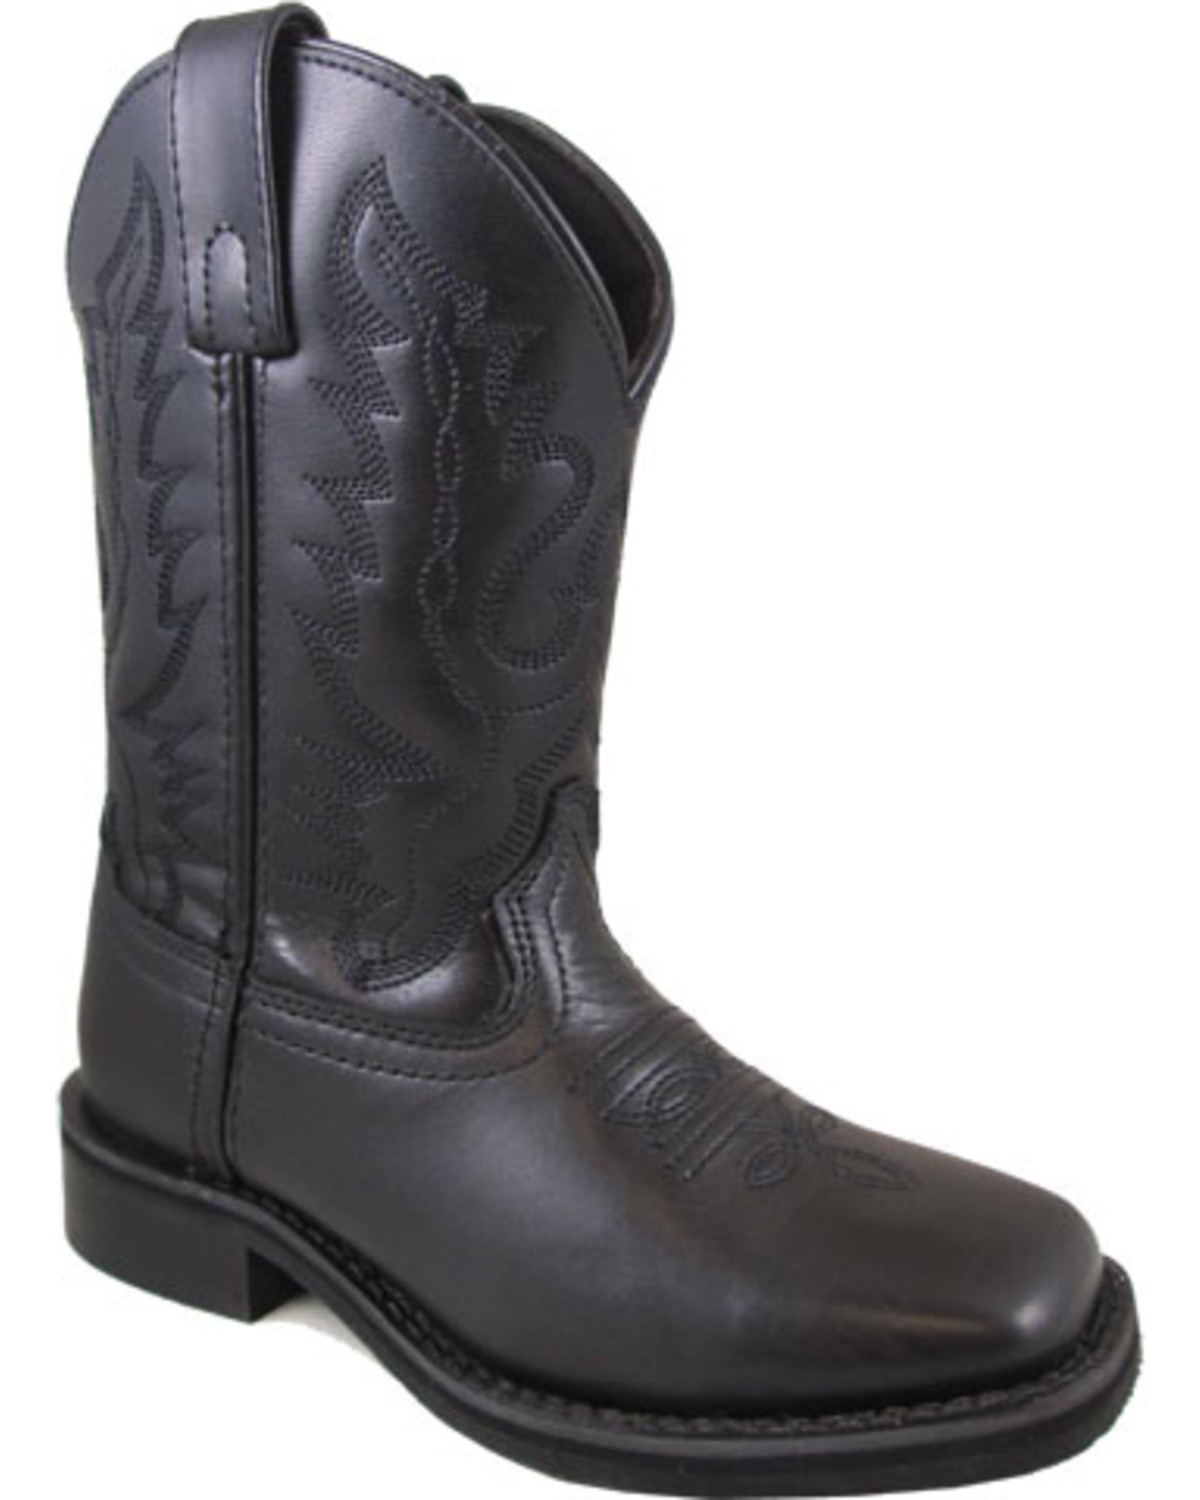 boys black boots